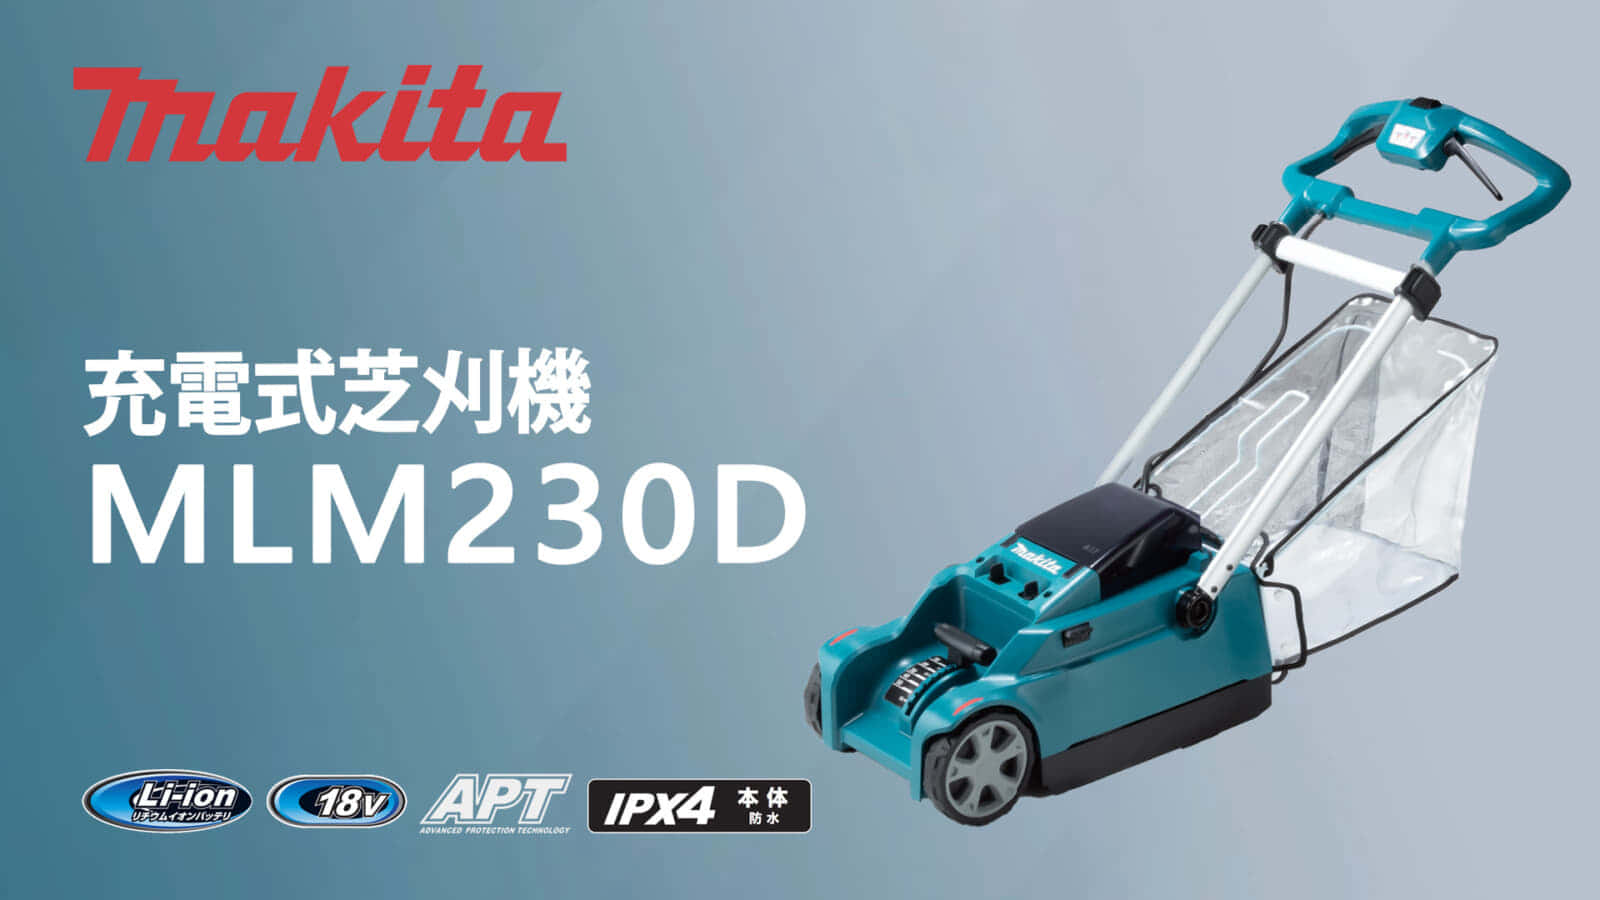 マキタ MLM230D 充電式芝刈機を発売、18Vバッテリー単体で動作する ...